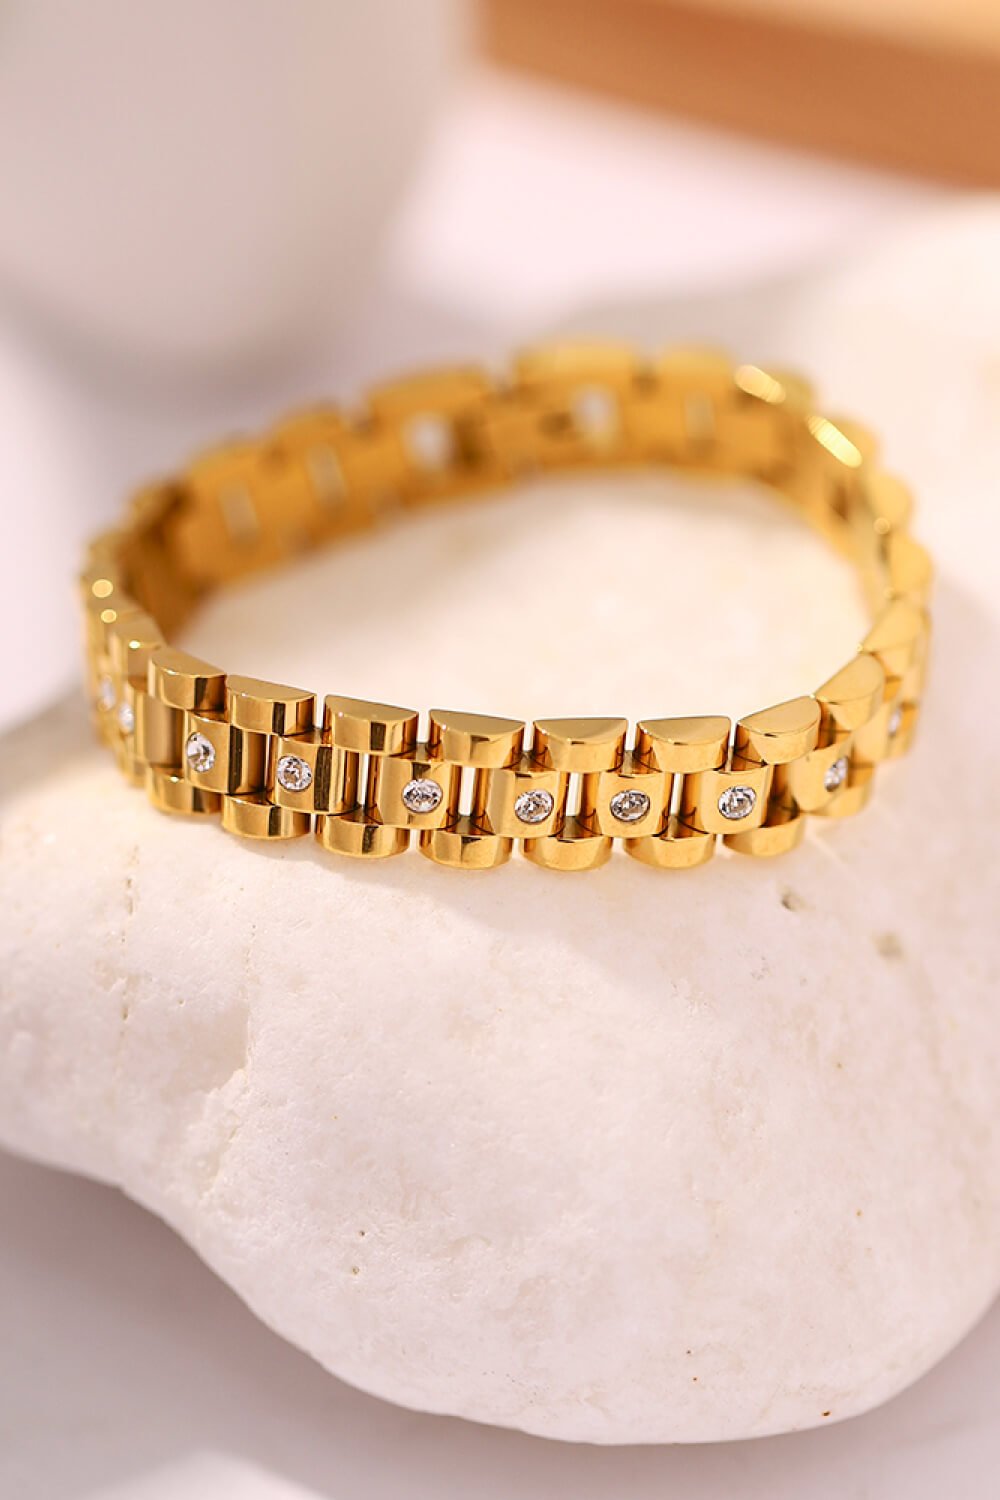 18K Gold-Plated Watch Band Bracelet - EMMY